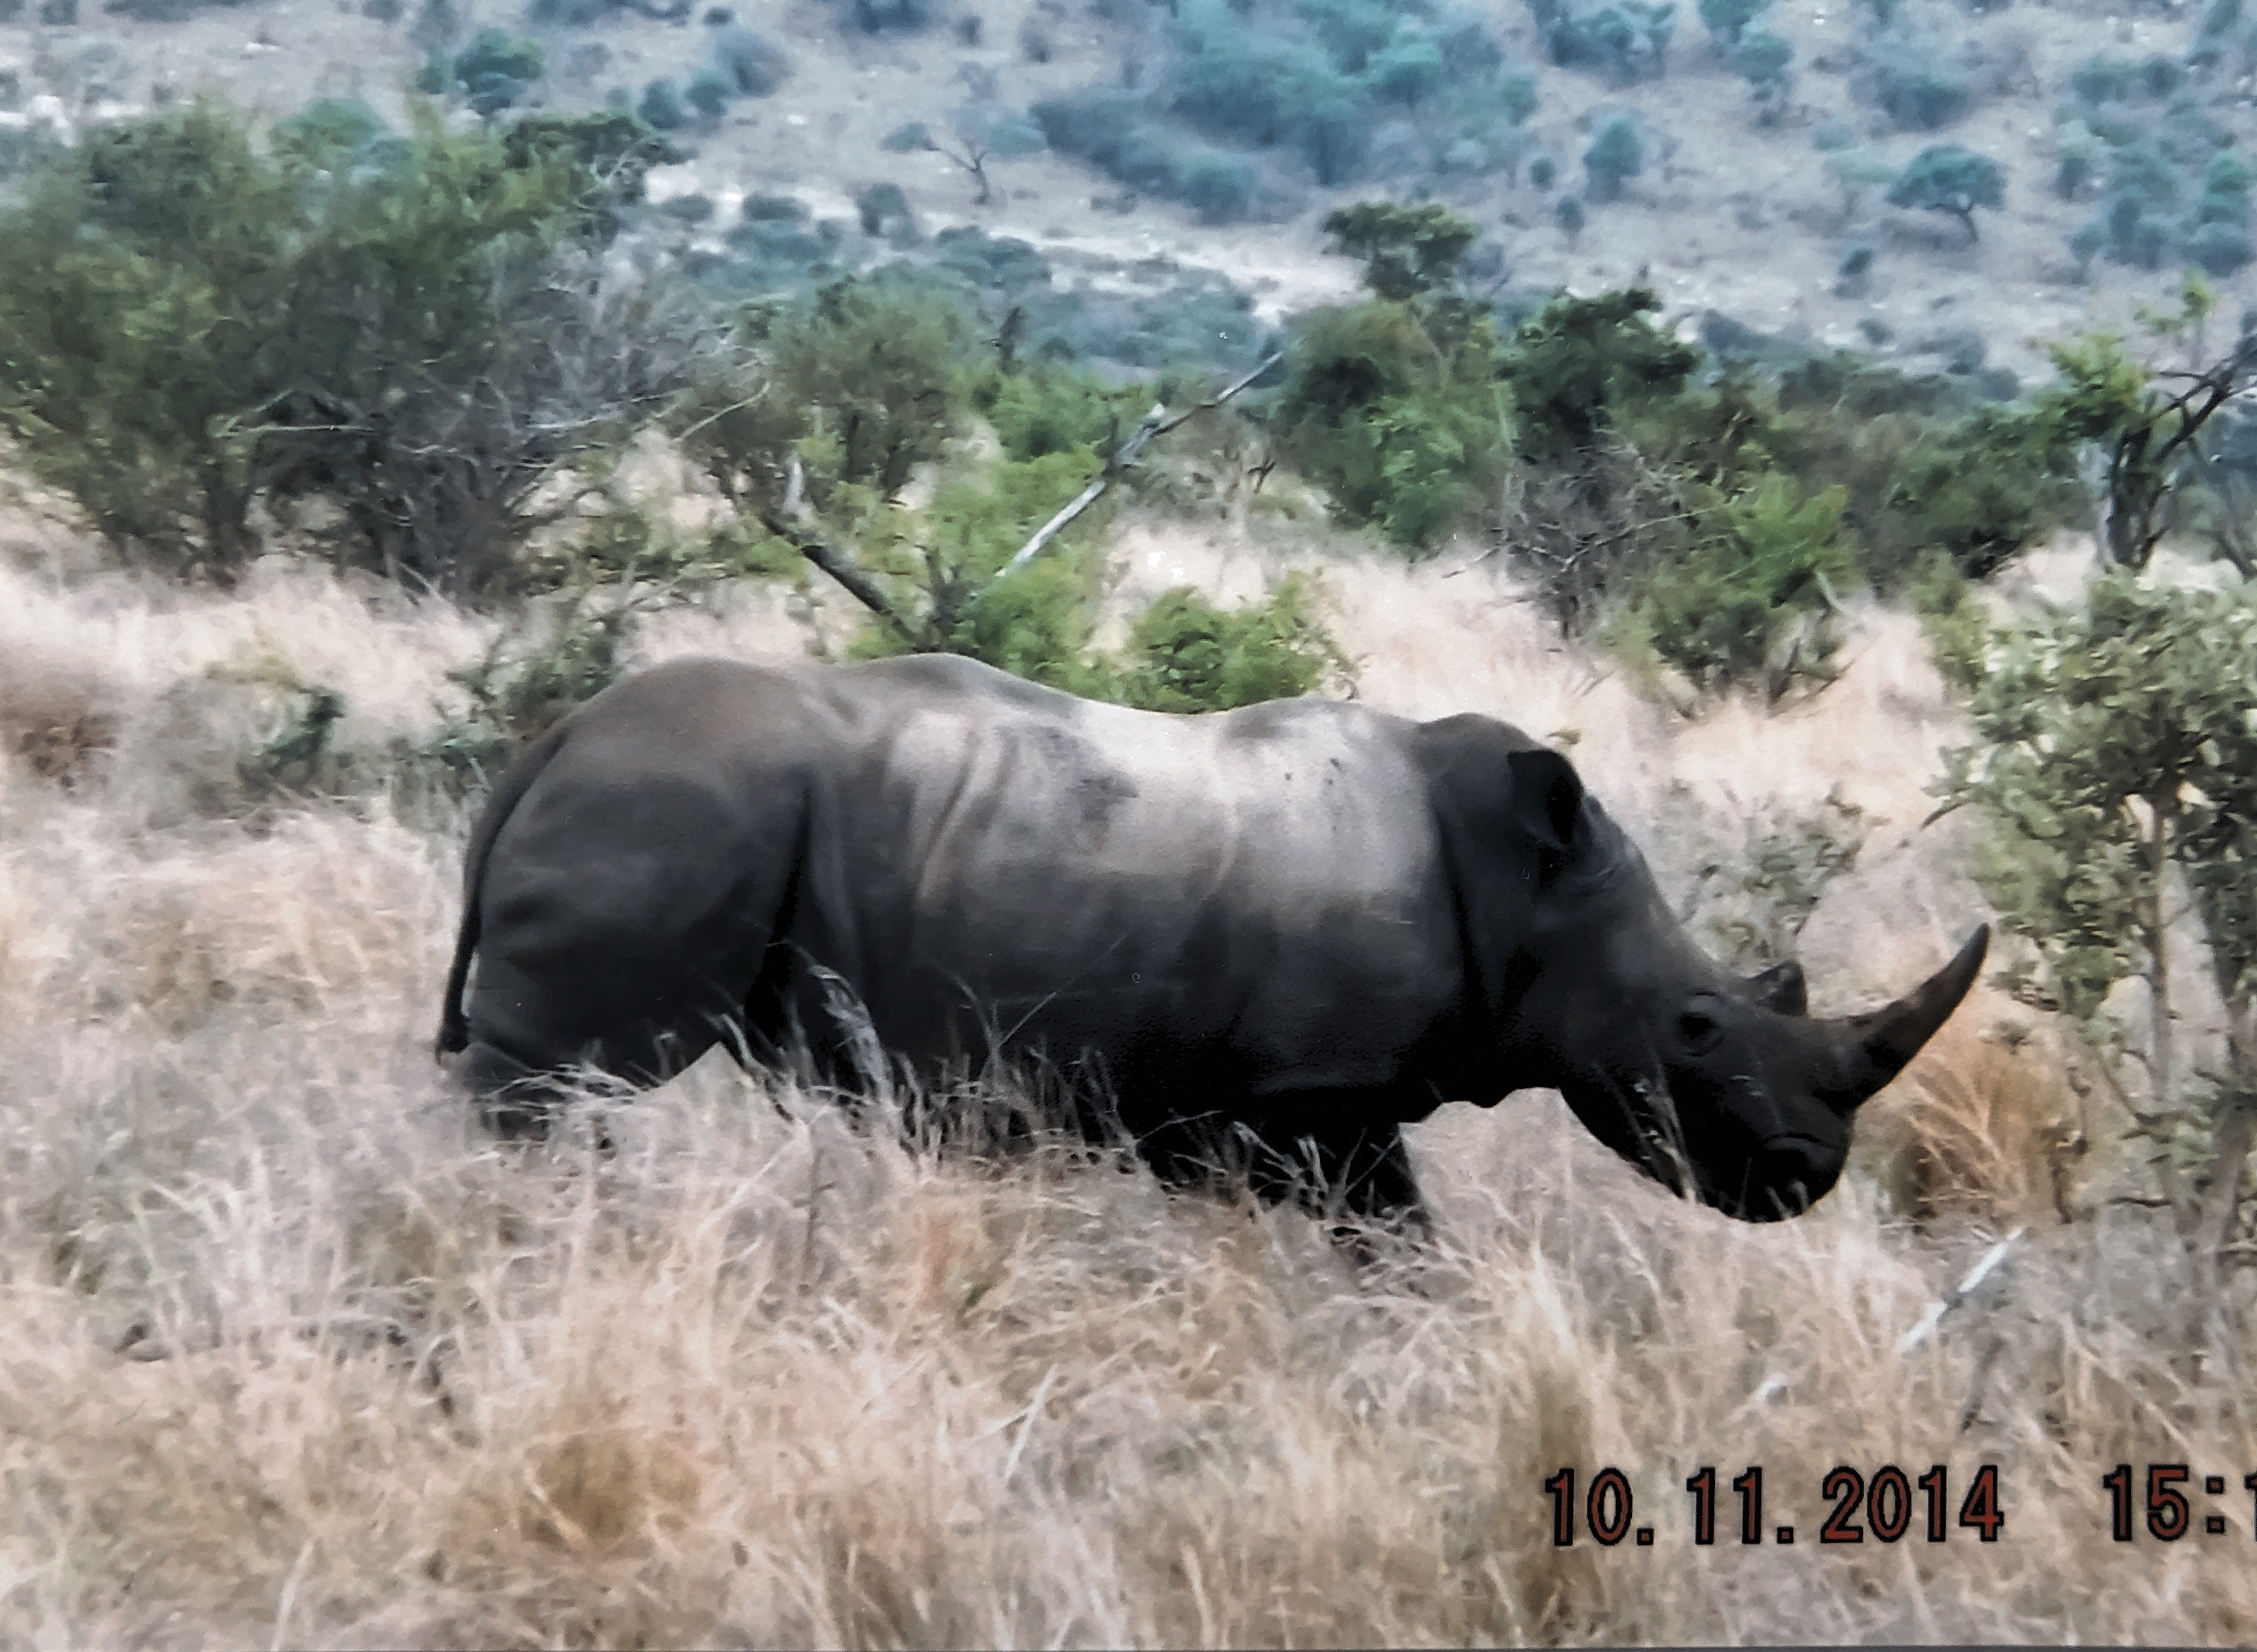 Rhino in Kruger park October 2014